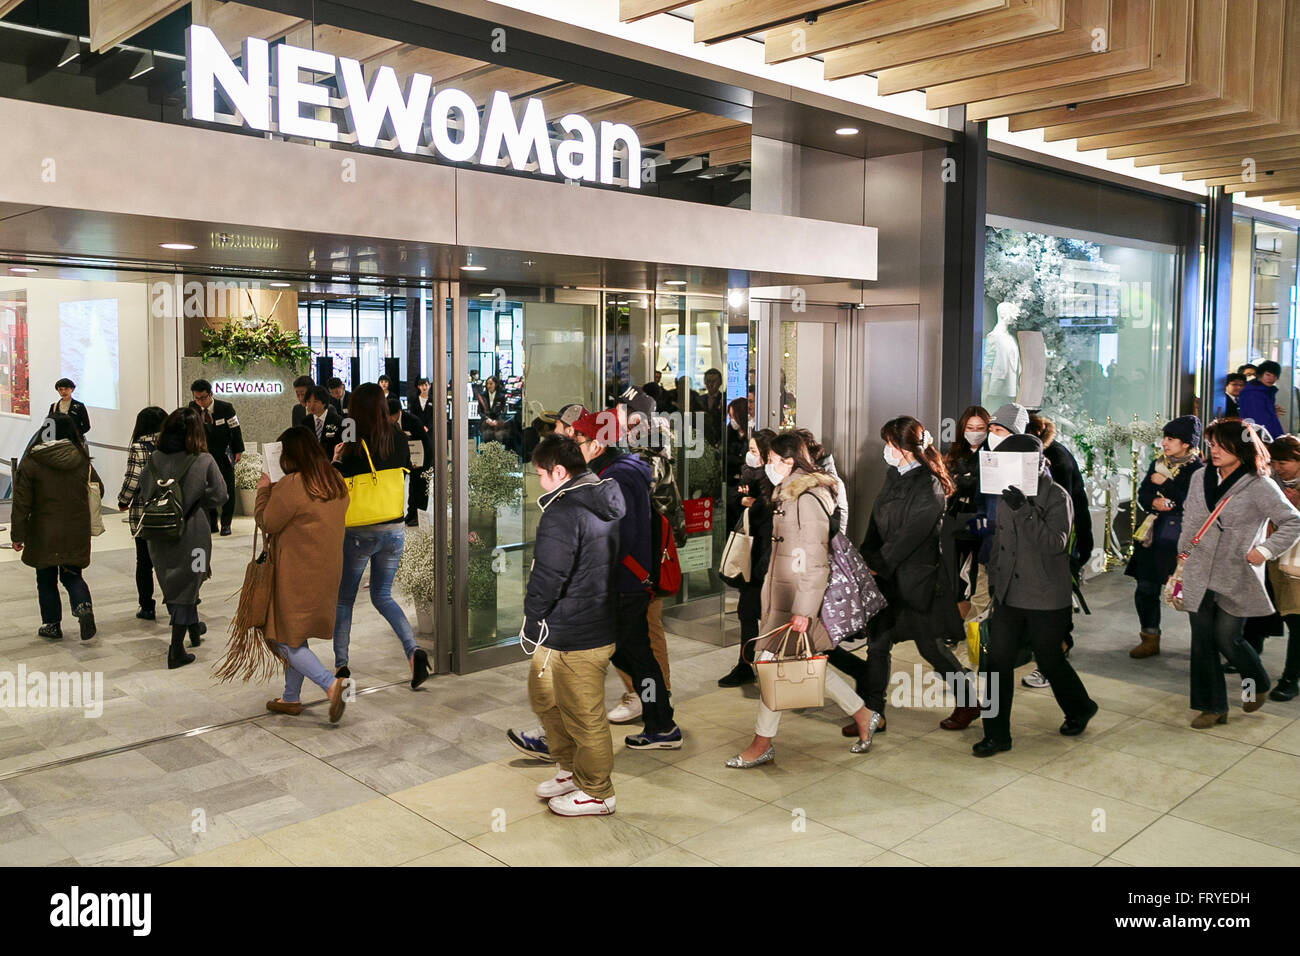 Menschen geben Sie zum ersten Mal das neue Kaufhaus NEWoMan in Shinjuku Einkaufsviertel am 25. März 2016, Tokio, Japan. Das NEWoMaN Kaufhaus öffnete seine Pforten für die Öffentlichkeit am 25 März und umfasst einige 100 Einzelhändler auf sechs Etagen JR Shinjuku Miraina Turm und das Empfangsgebäude JR Shinjuku Station neue Südausgang. Bahnhof Shinjuku-Funktionen in das Guinness Buch der Rekorde als weltweit verkehrsreichsten Verkehrsknotenpunkt mit über 3,3 Millionen Fahrgäste die Bahnhof jeden Tag im Jahr 2013 und die neue Abteilung strebt 20 Milliarden Yen in den jährlichen Verkäufen zu generieren. (Foto von Rodrigo Reyes Marin Stockfoto